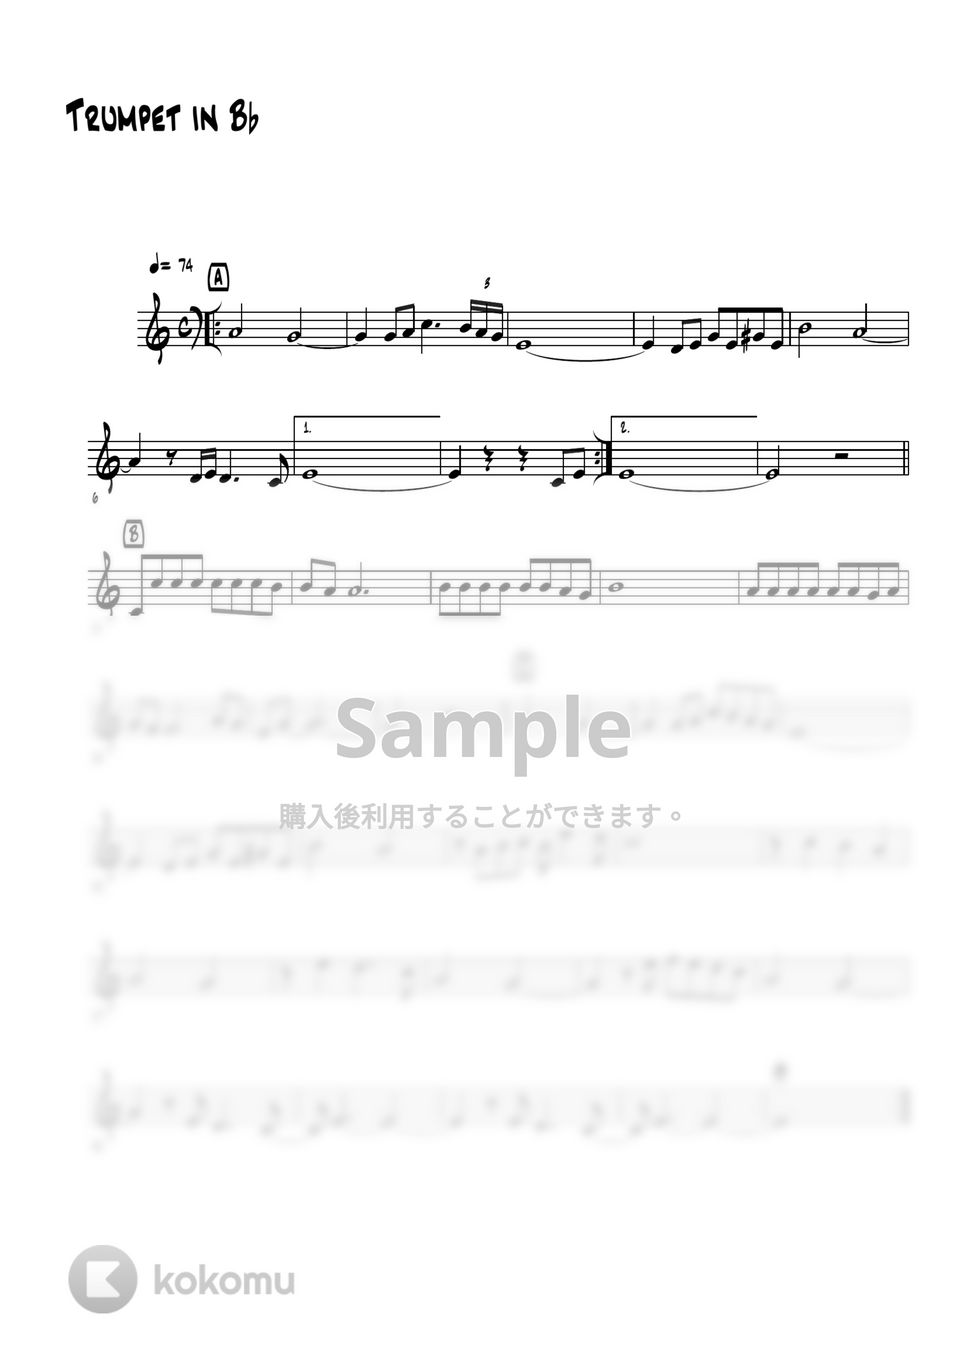 バーブラ・ストライサンド - THE WAY WE WERE (トランペットメロディー楽譜) by 高田将利